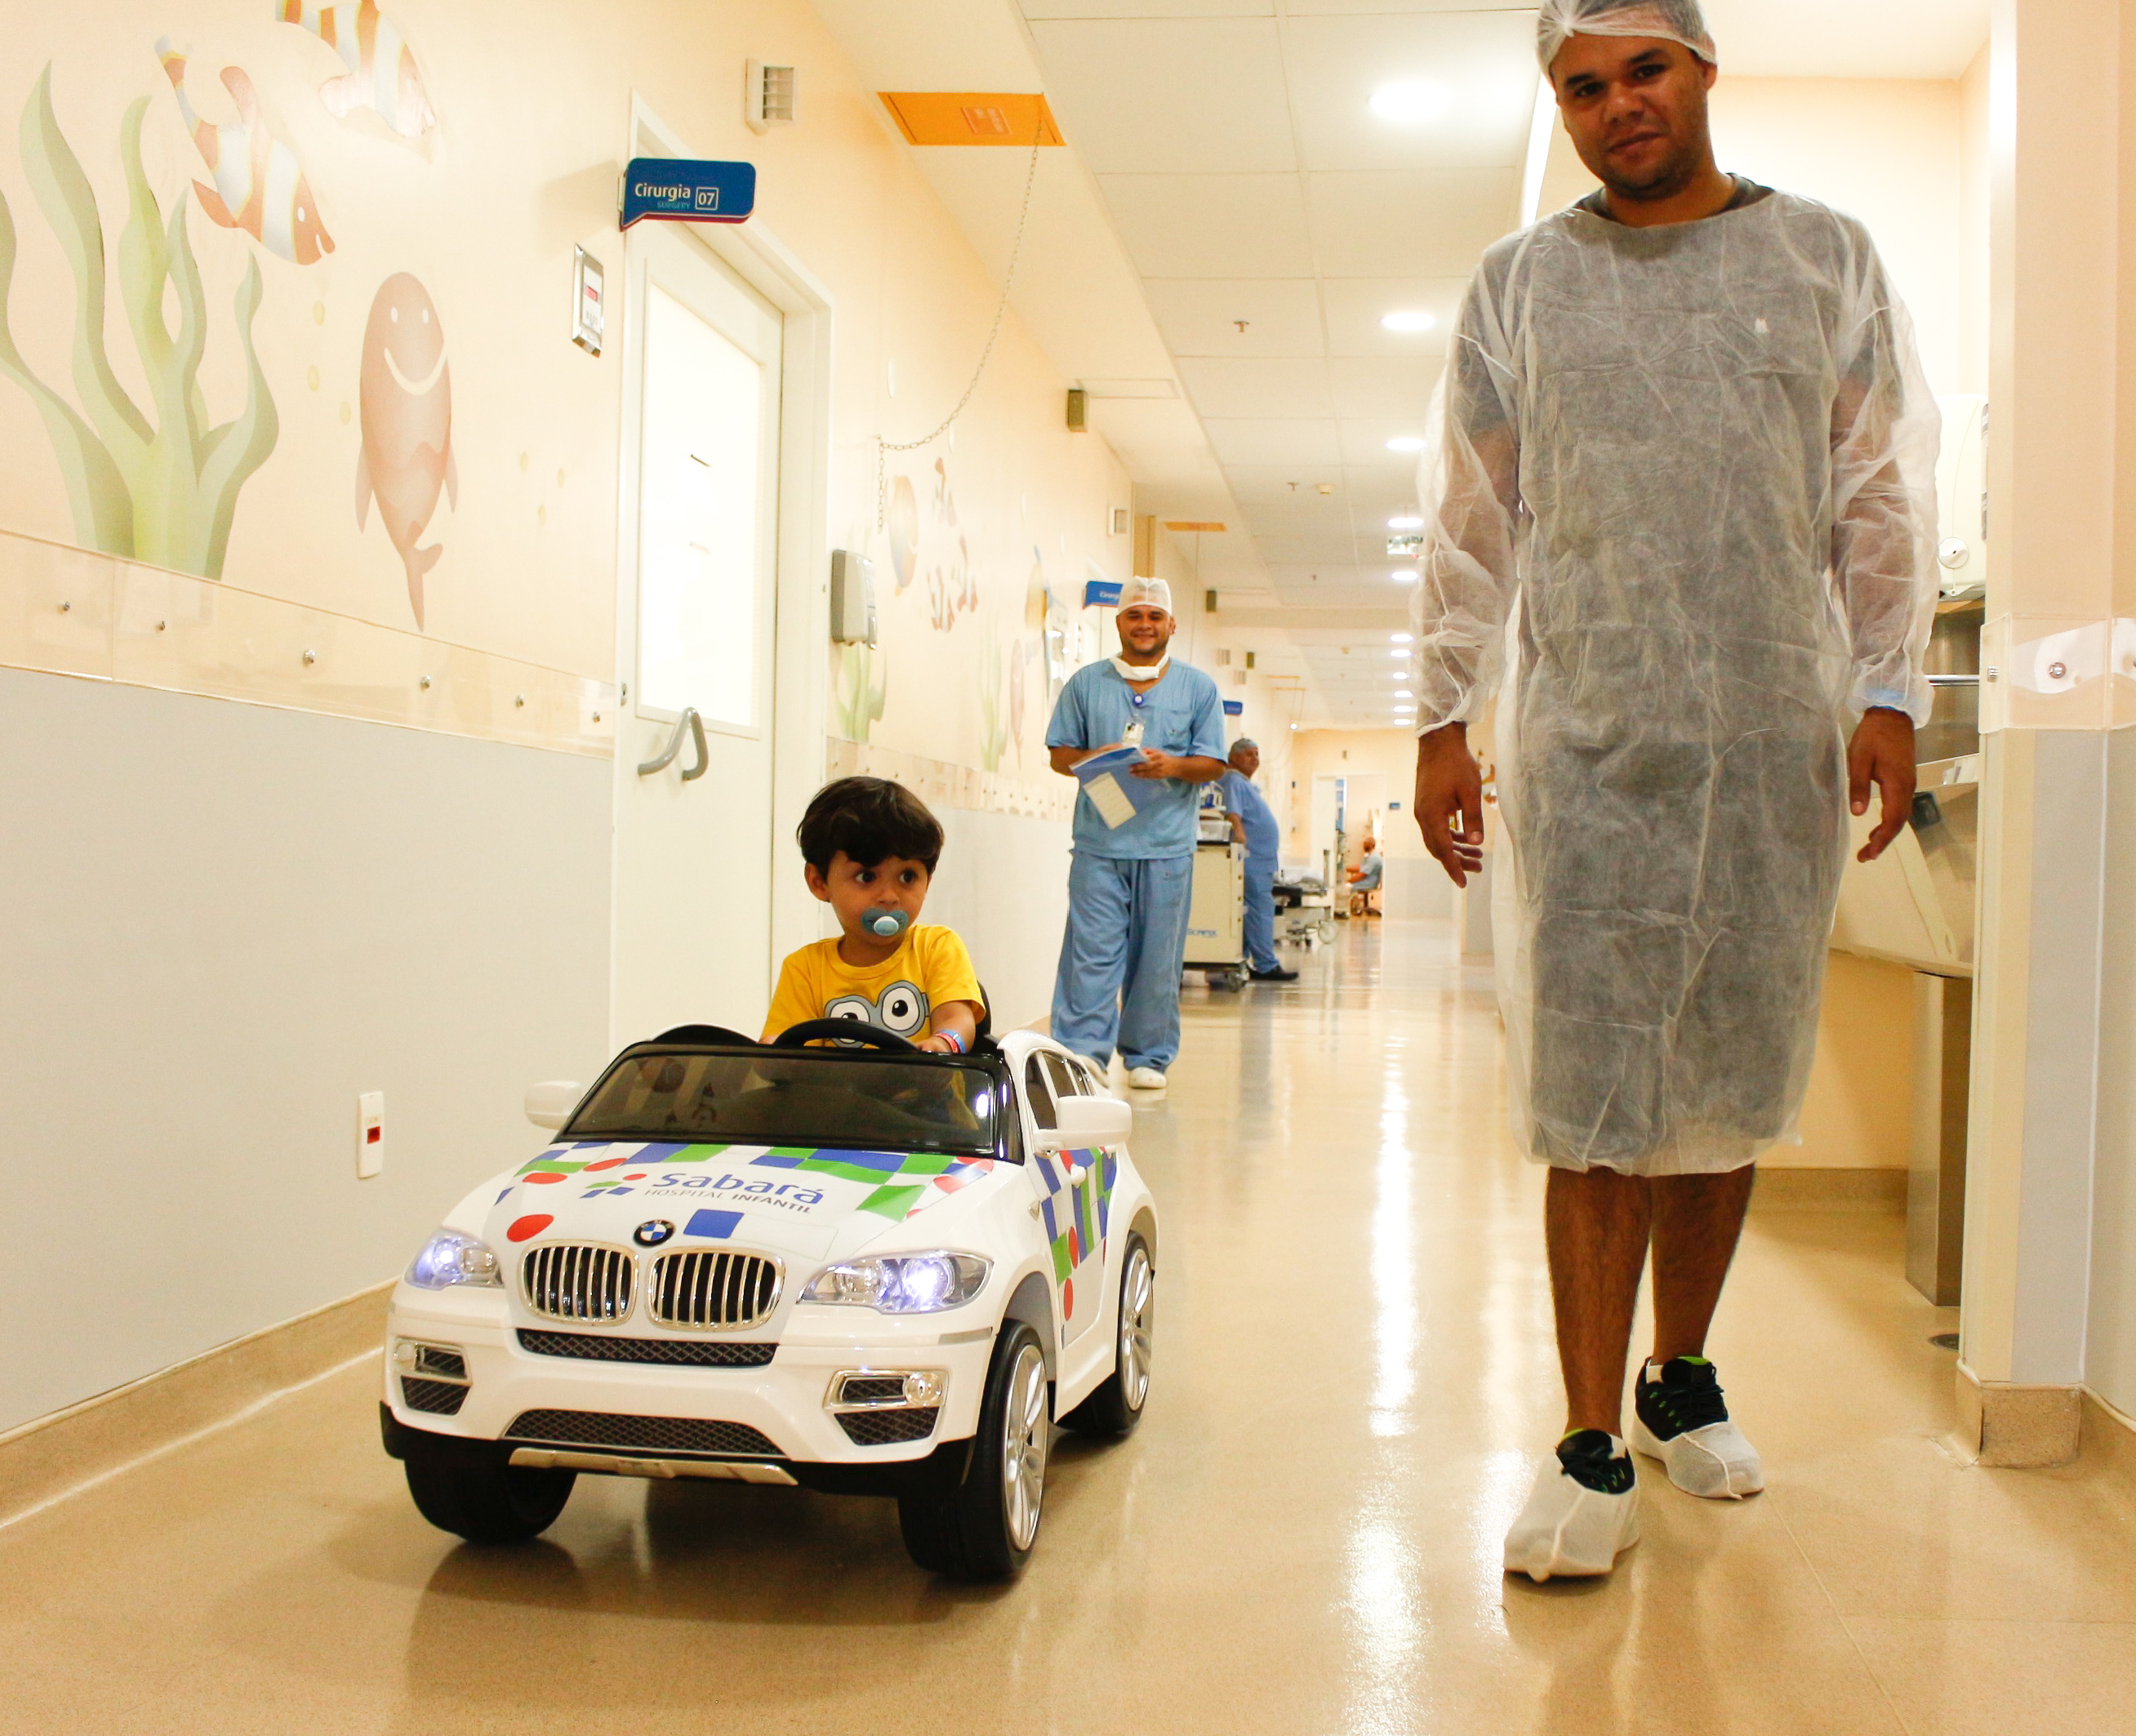 Carrinhos elétricos levam crianças até centro cirúrgico em hospital infantil